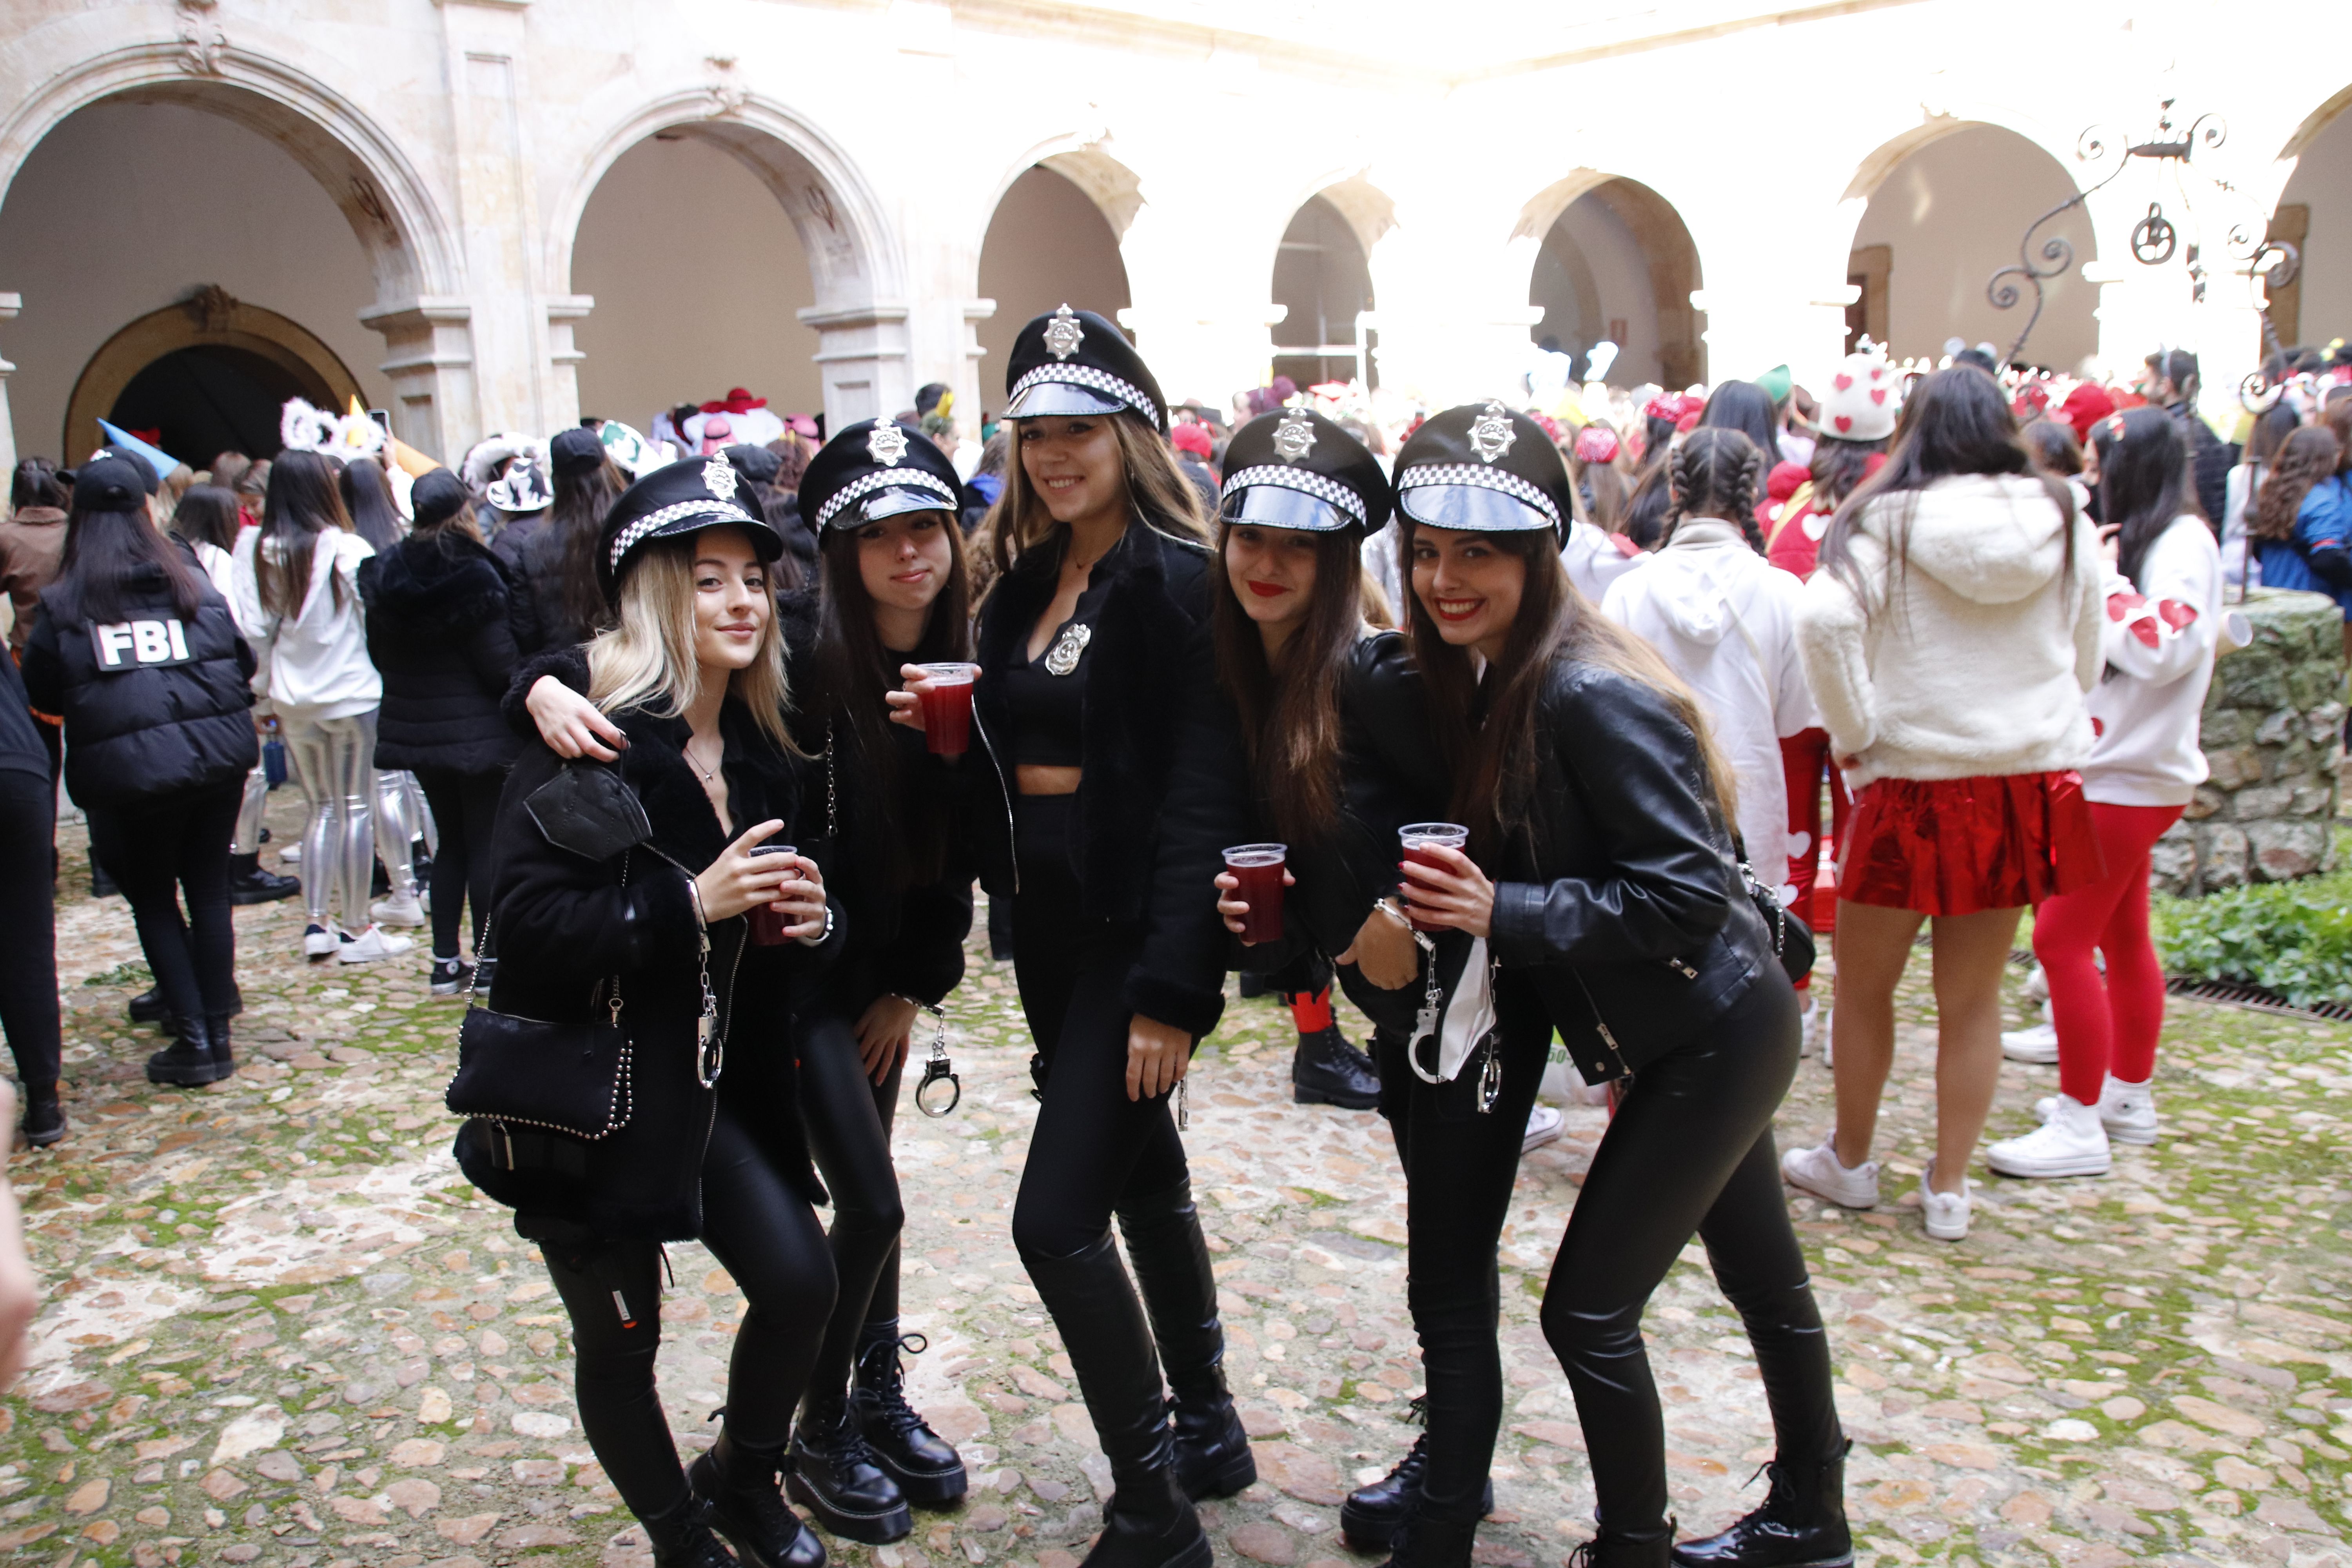 Chicas disfrazadas de policía durante unas fiestas de facultad | Foto Andrea 